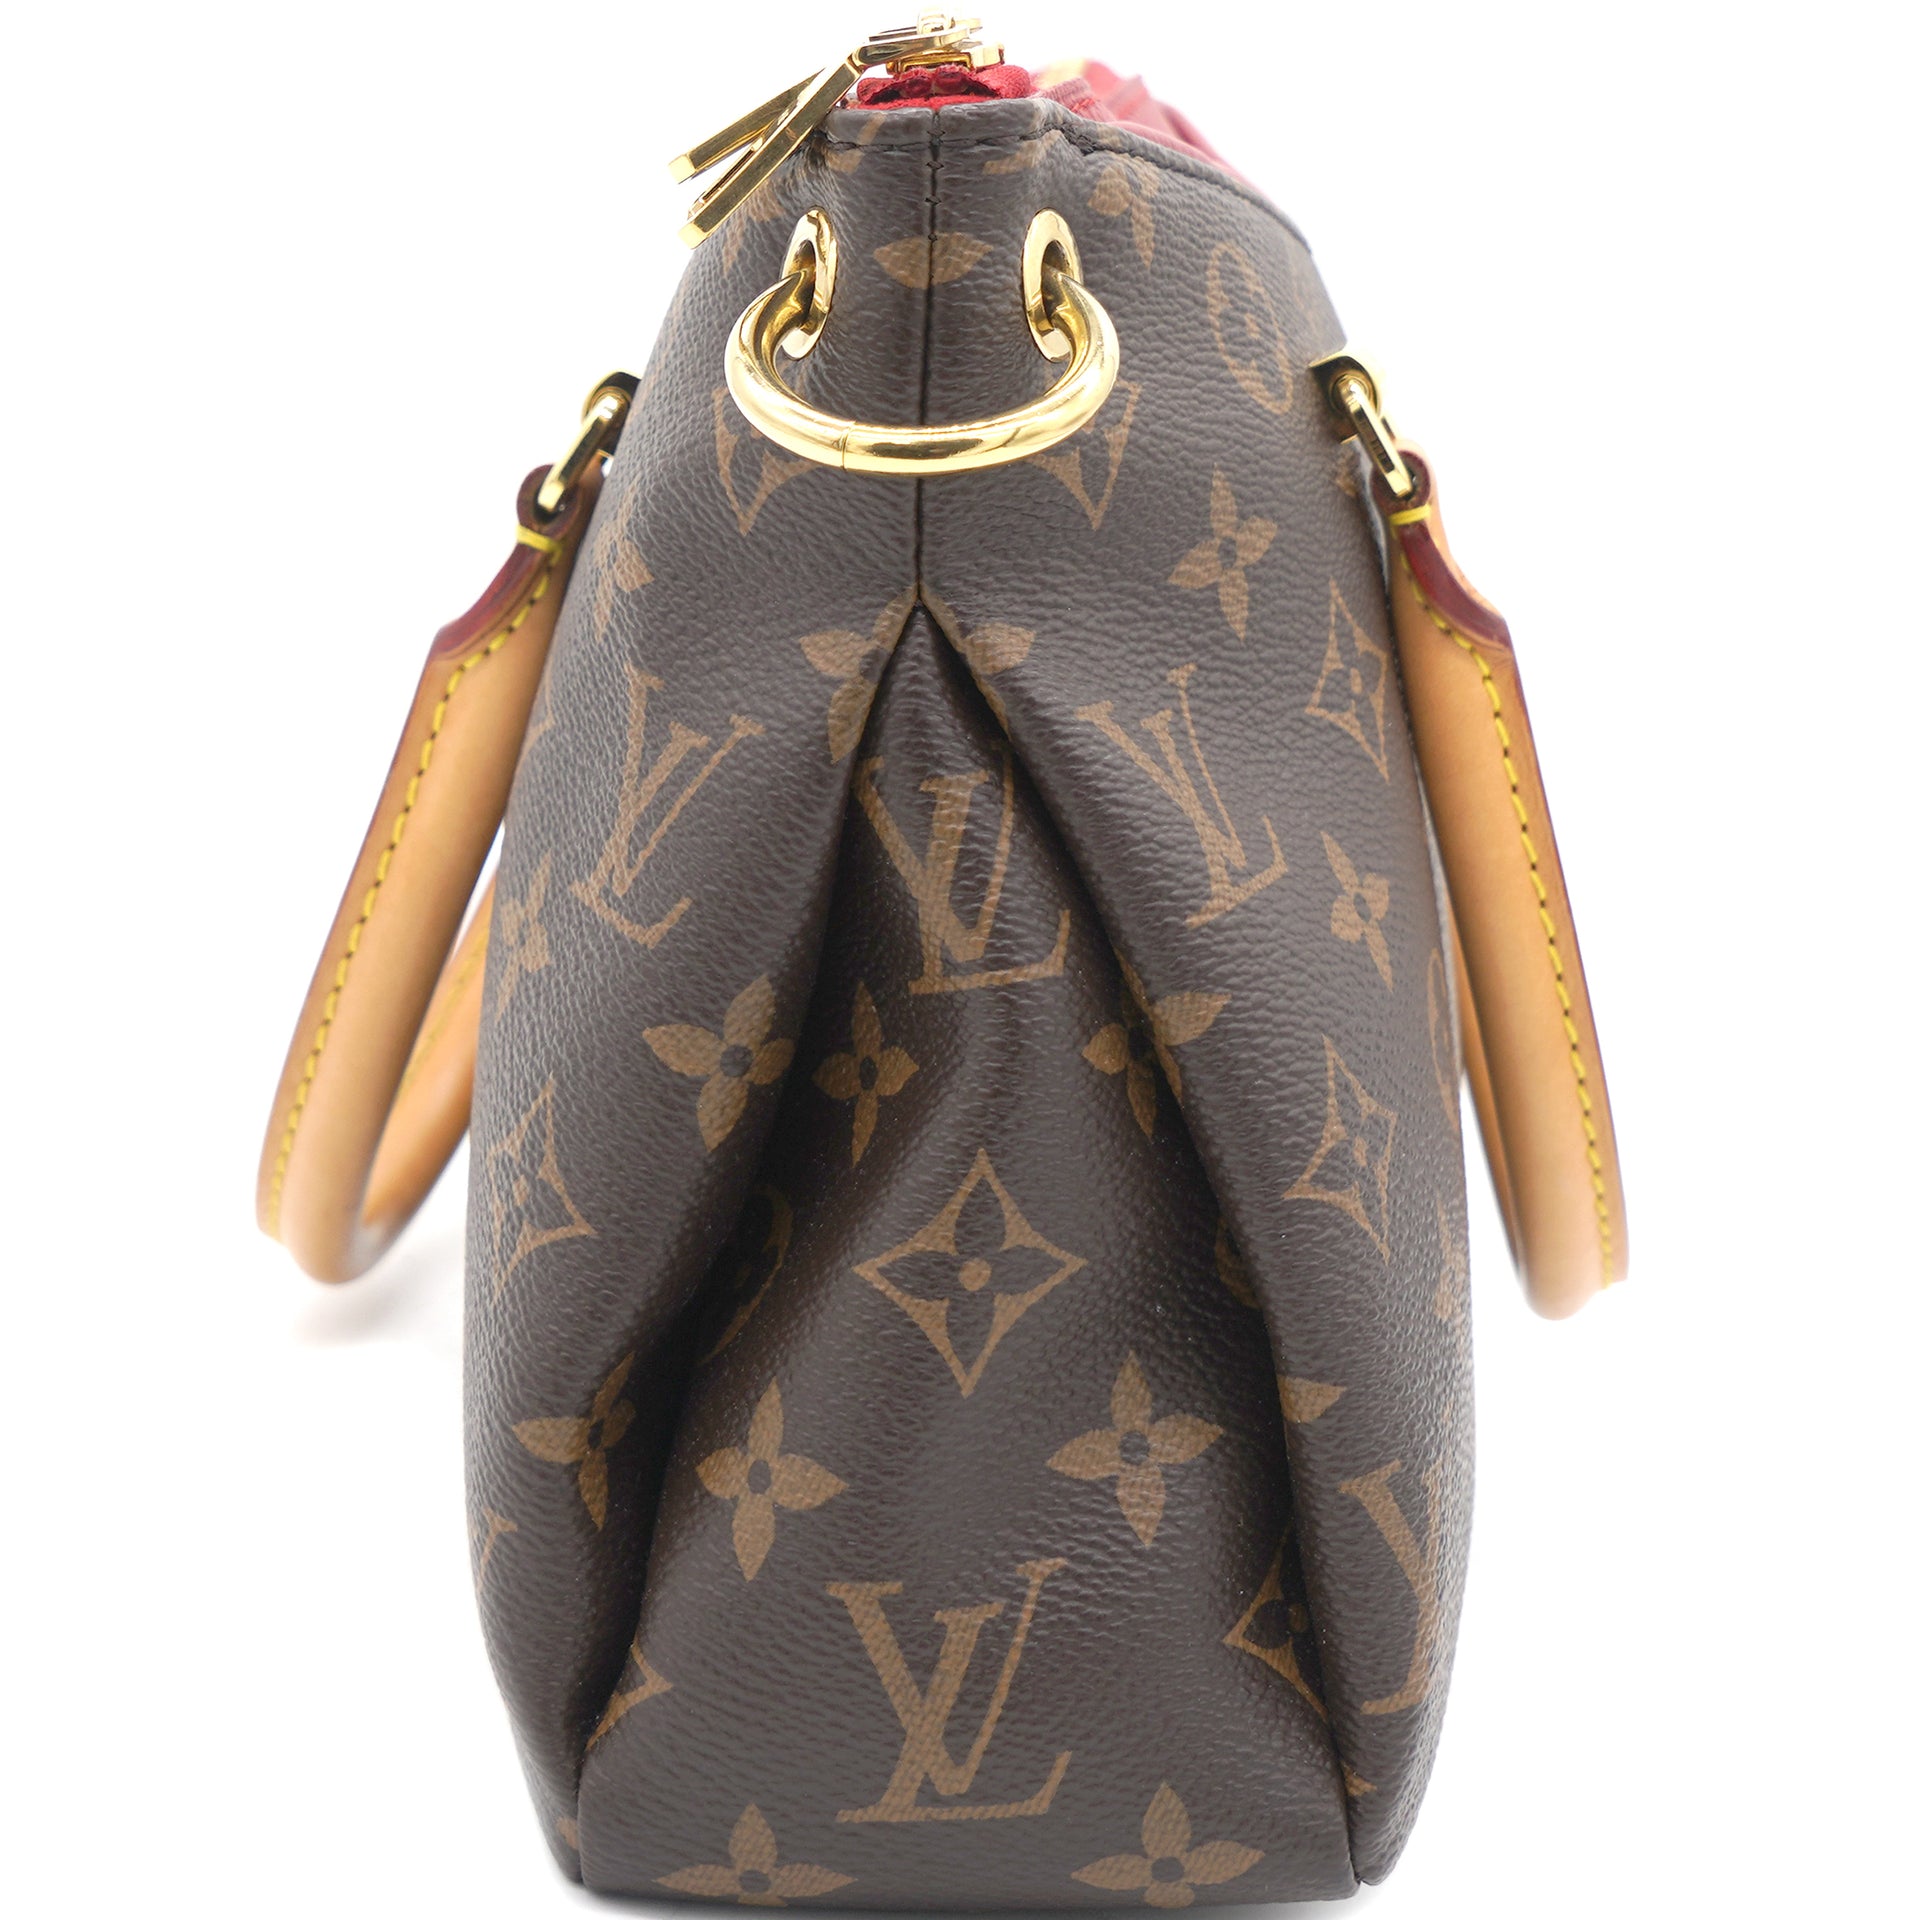 Louis Vuitton, Bags, Louis Vuitton Cerise Pallas Shopper Monogram Tote